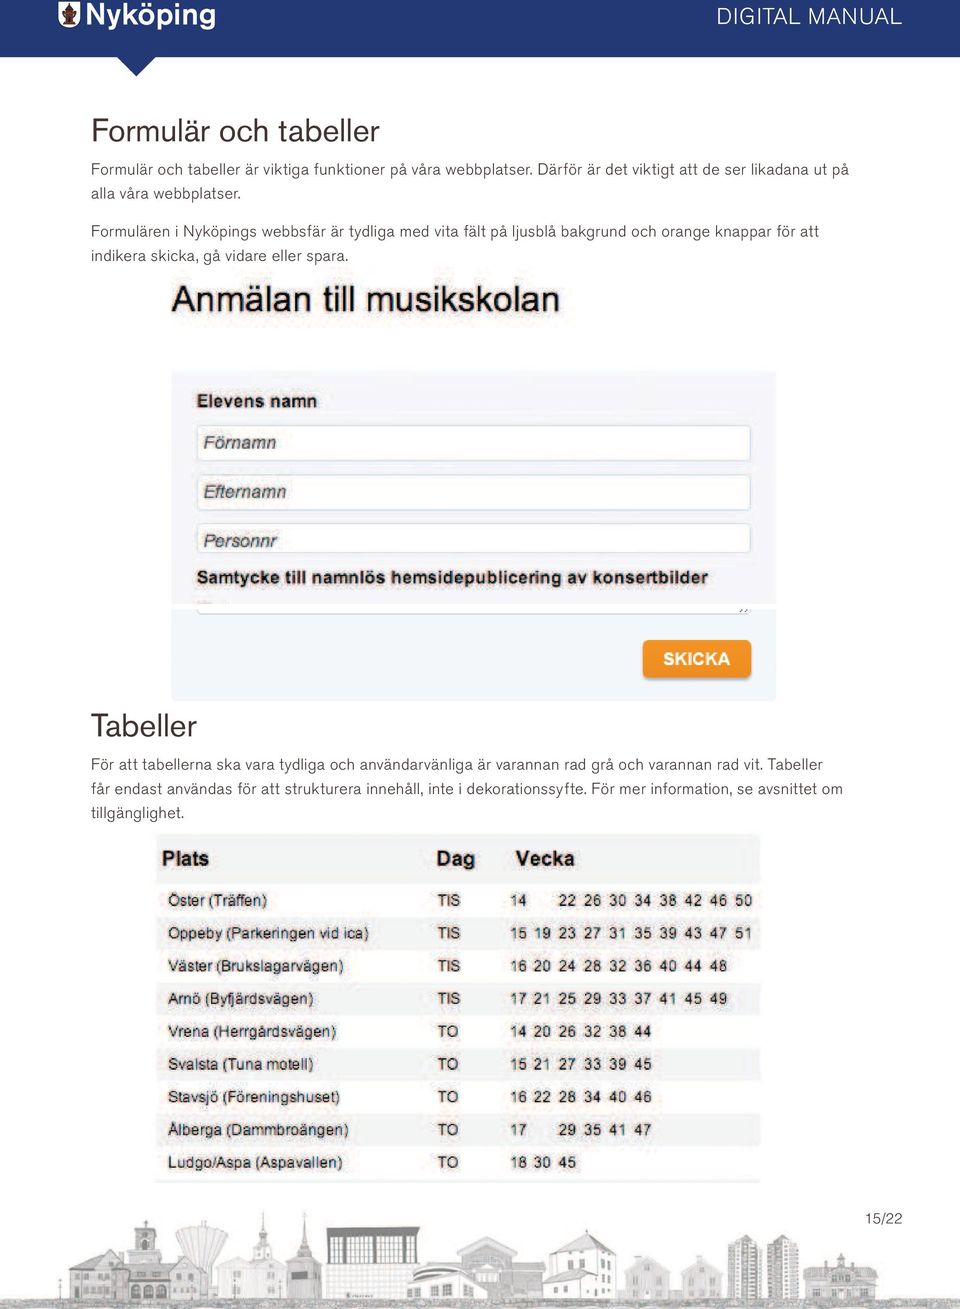 Formulären i Nyköpings webbsfär är tydliga med vita fält på ljusblå bakgrund och orange knappar för att indikera skicka, gå vidare eller